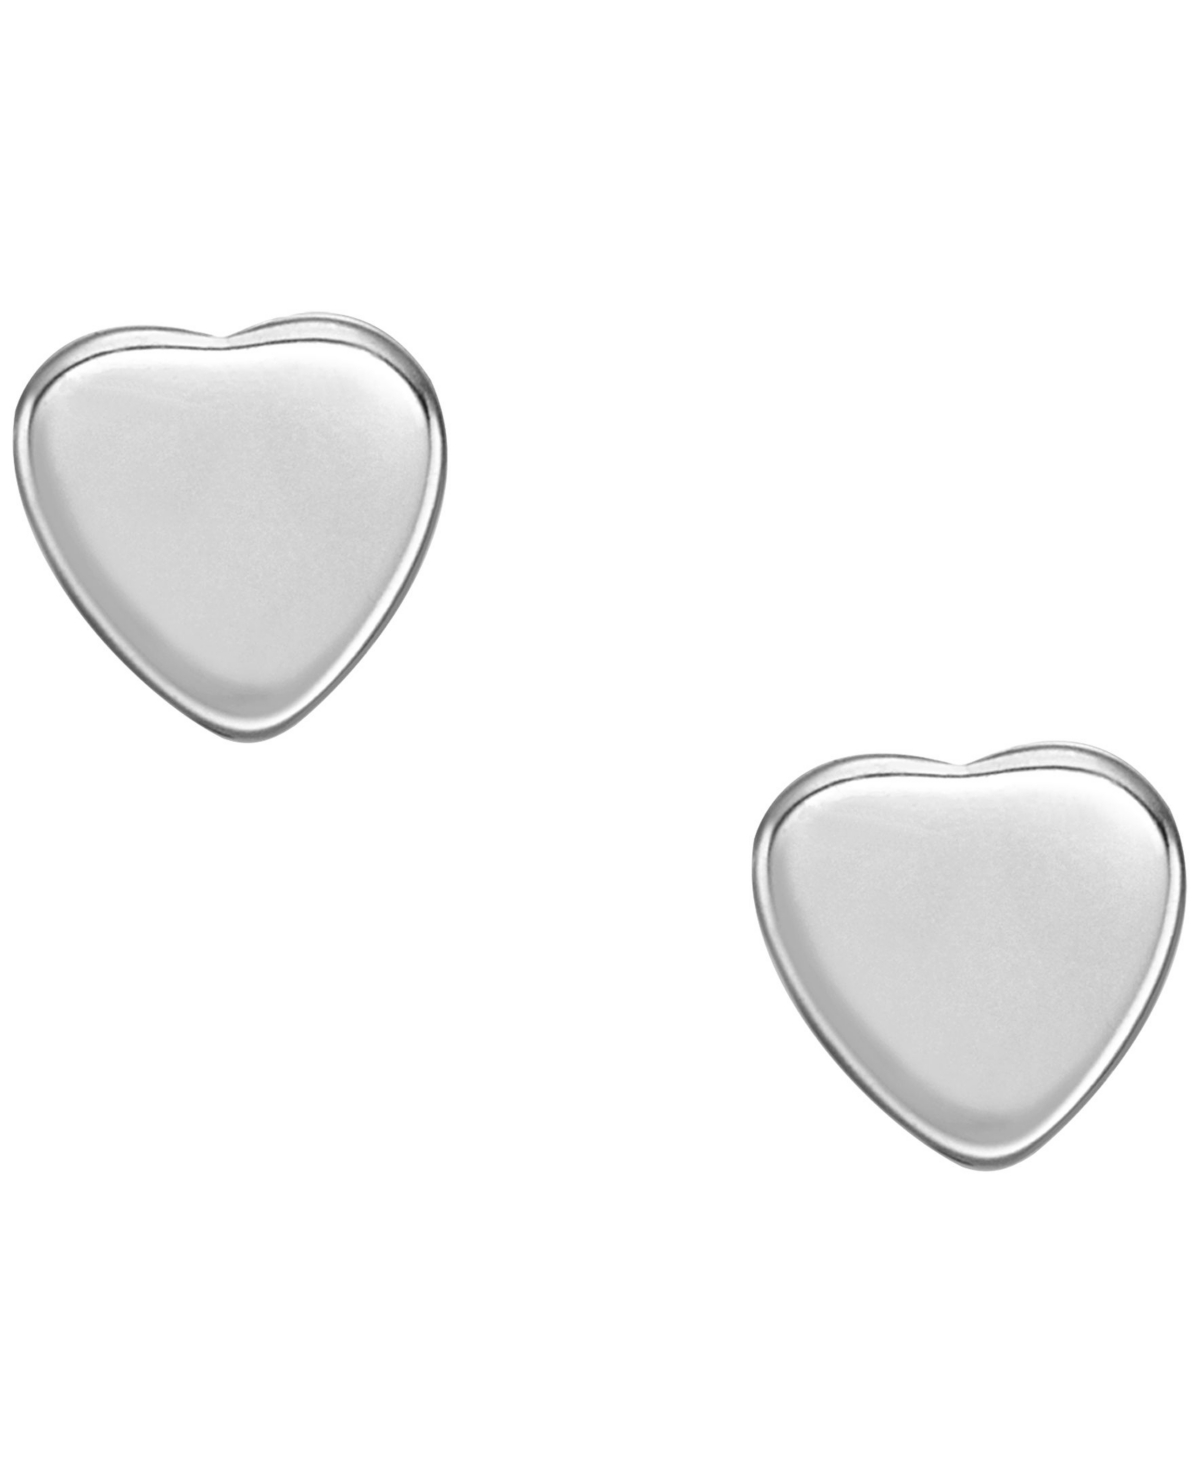 Fossil Hearts Stud Earrings In Metallic